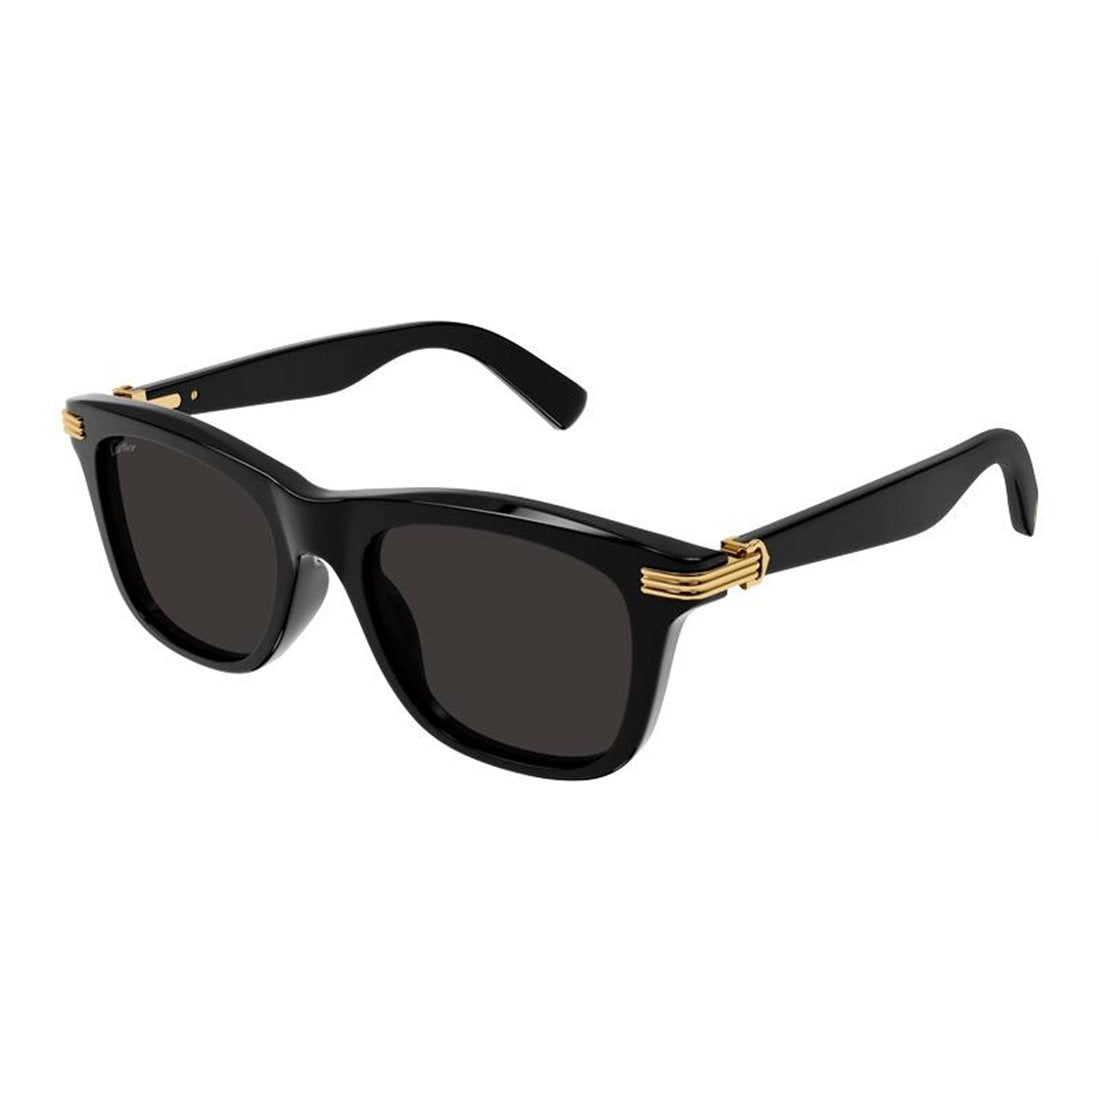 CARTIER Classic Black Sunglasses for Men - High Quality Acetate Frames